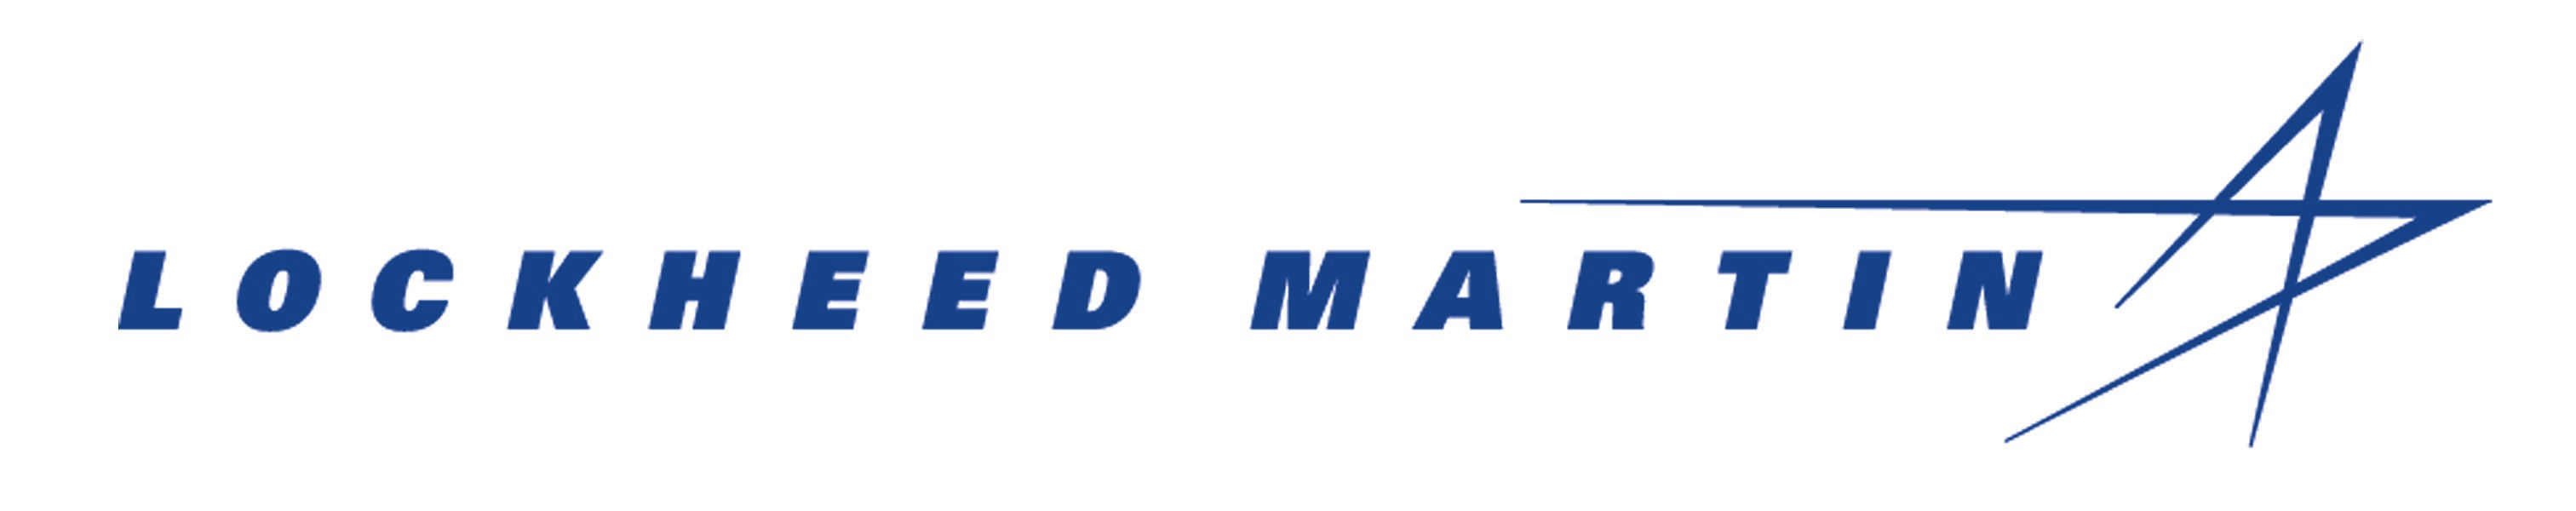 2014 Lockheed Martin Logo